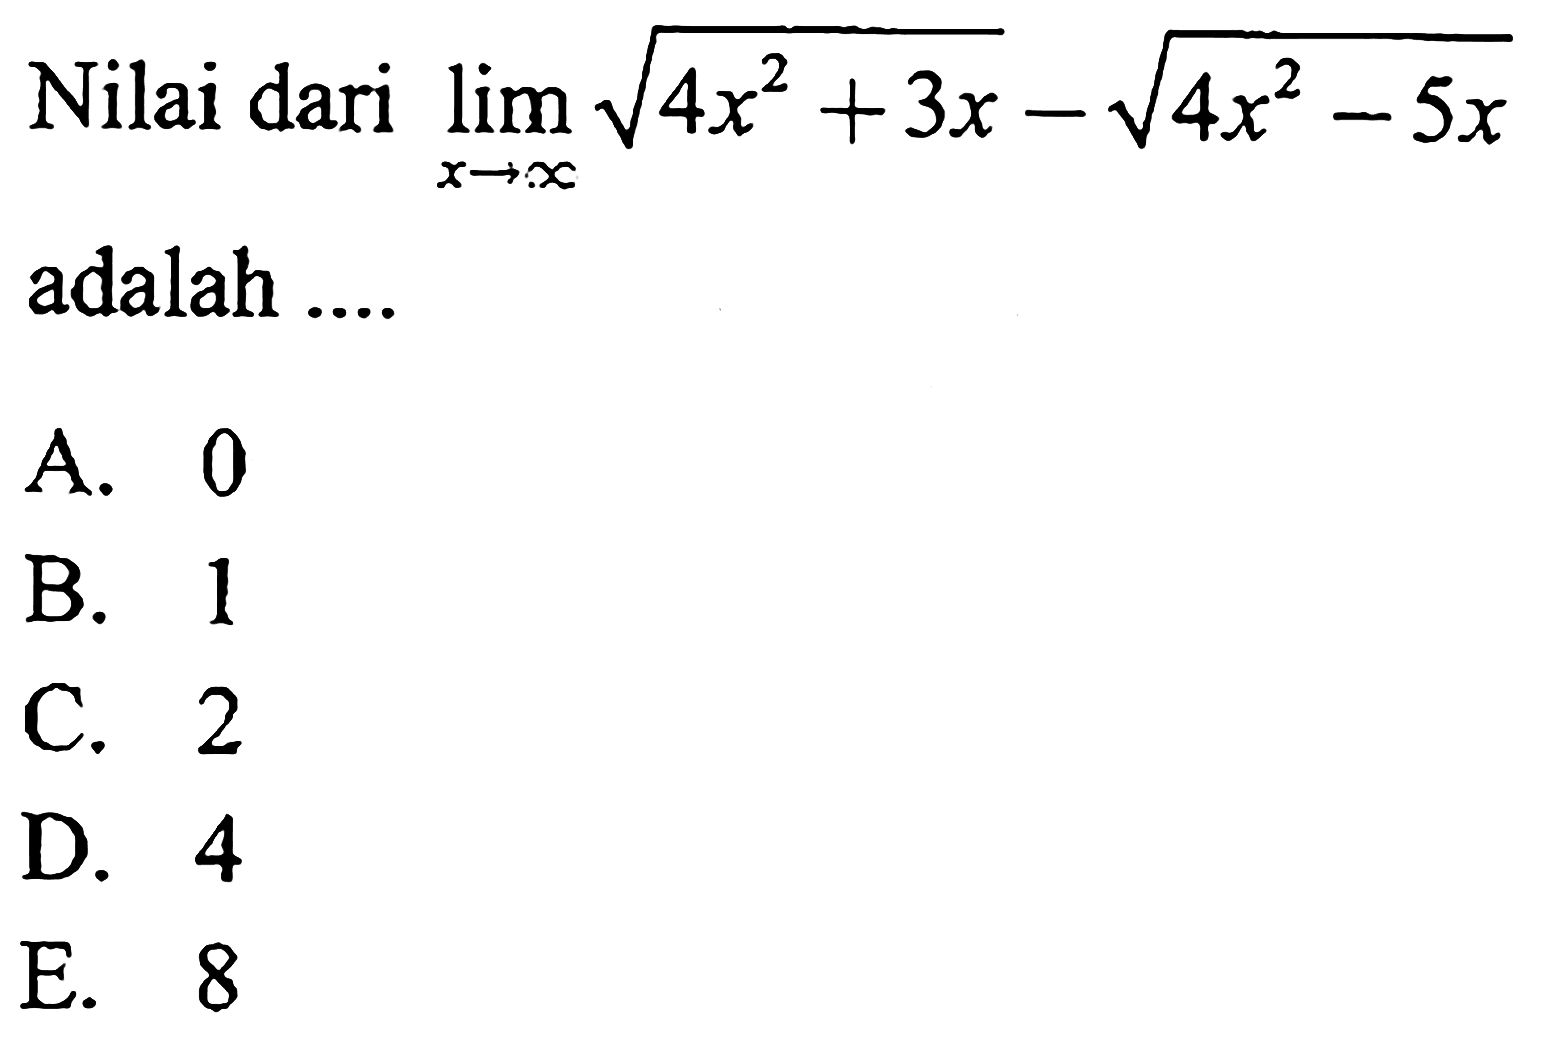 Nilai dari lim x->tak hingga akar(4x^2+3x)-akar(4x^2-5x) adalah ....